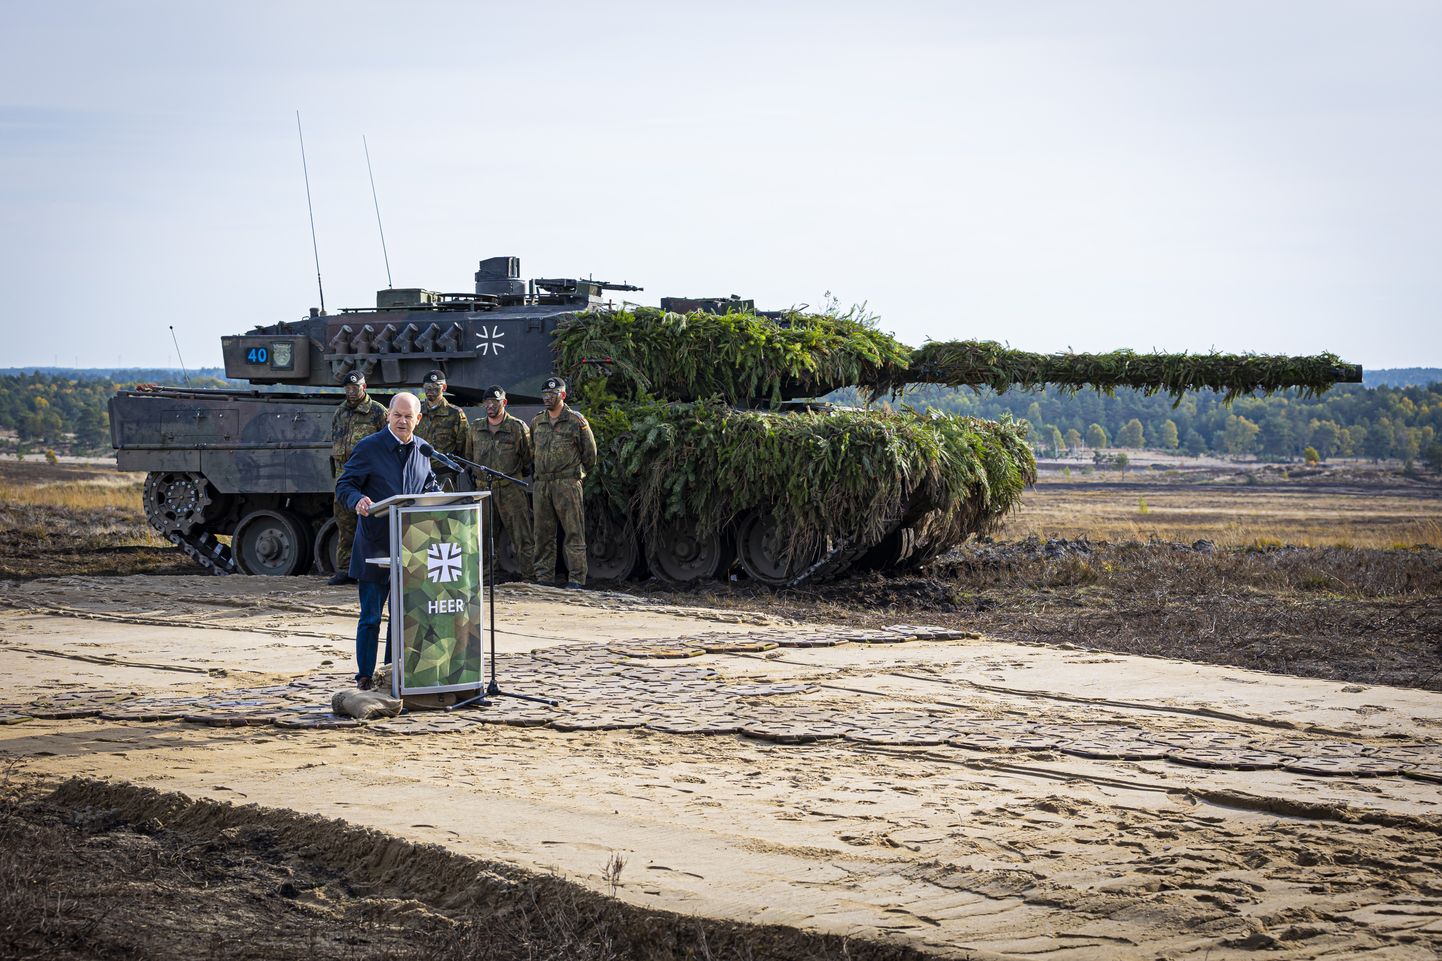 Канцлер Германии Олаф Шольц выступает с речью на учениях Вооруженных сил Германии в Остенхольце 17 октября 2022 года. На заднем плане виден танк Leopard 2 с частичным камуфляжем.